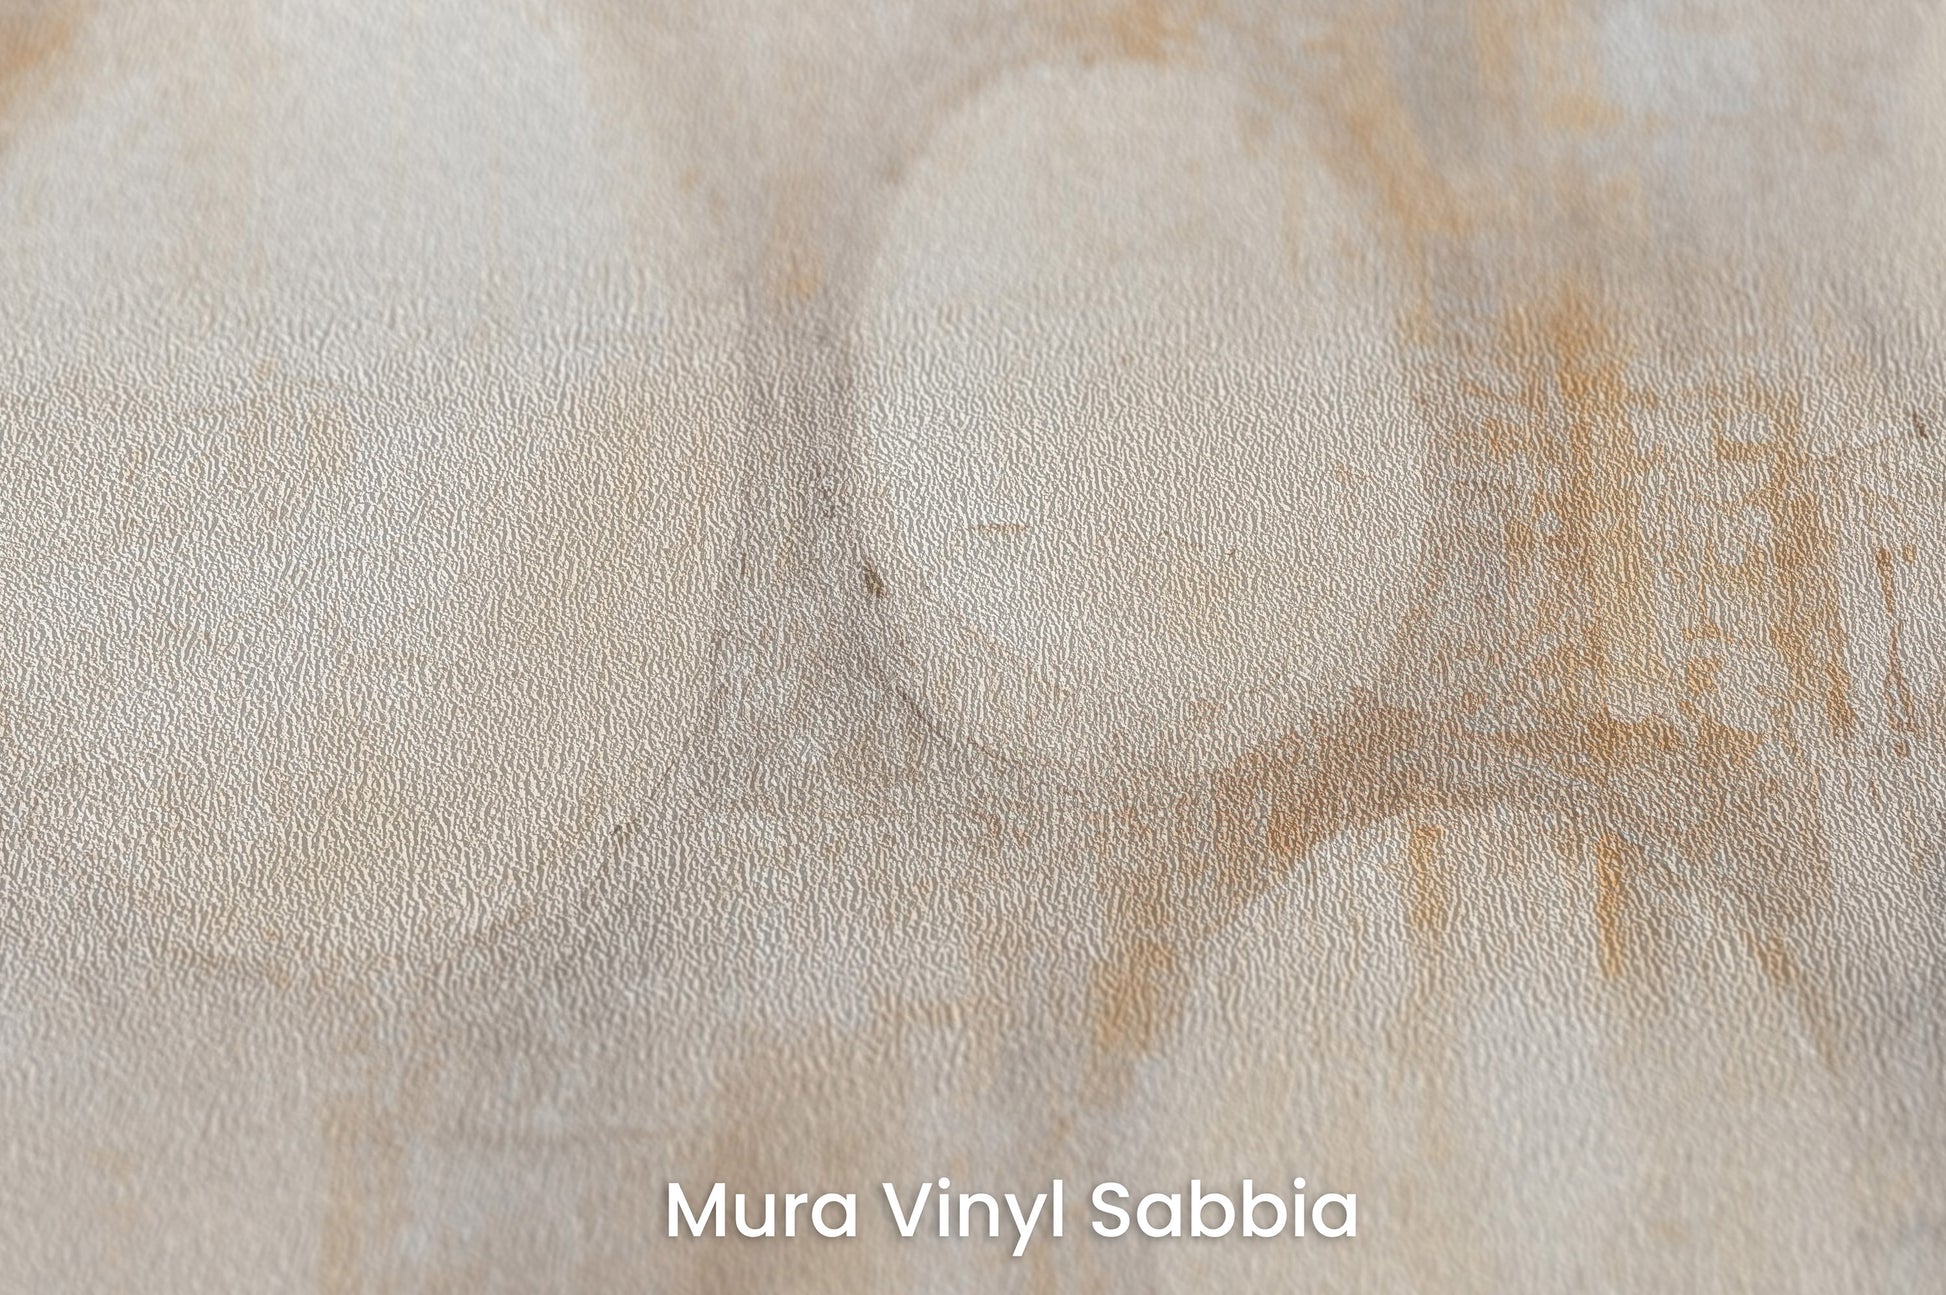 Zbliżenie na artystyczną fototapetę o nazwie TRANQUIL CIRCLES na podłożu Mura Vinyl Sabbia struktura grubego ziarna piasku.